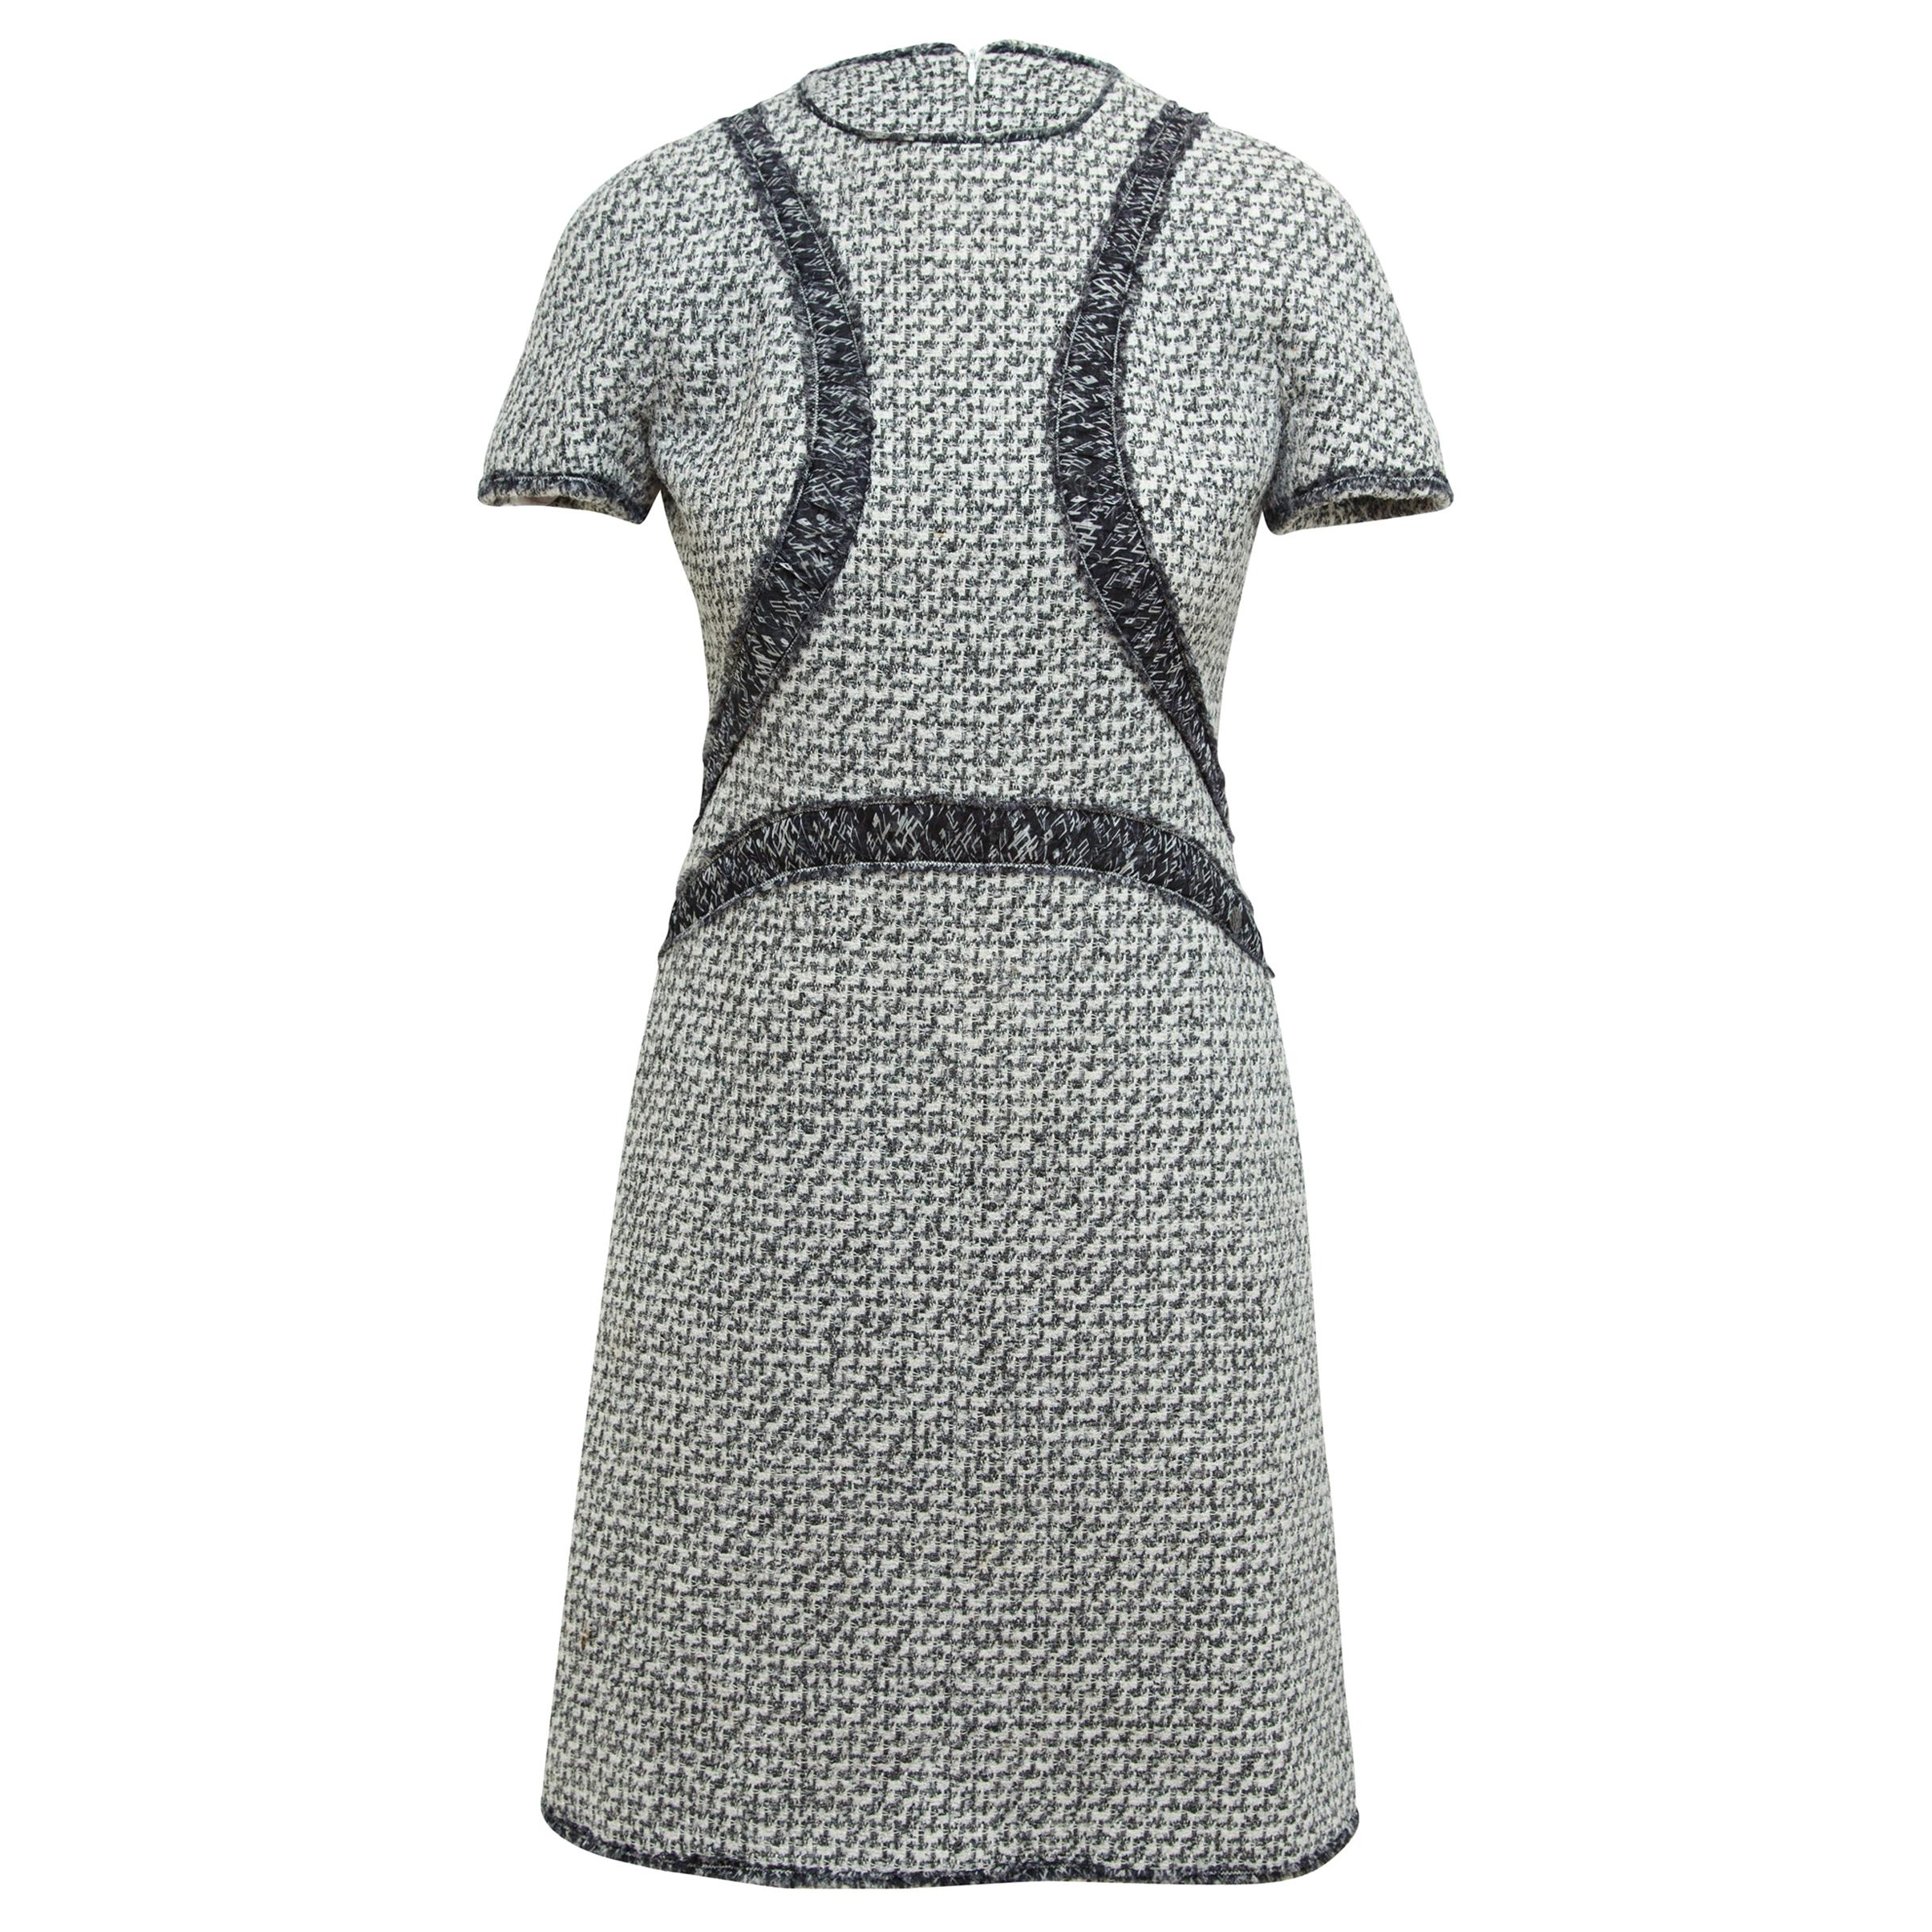 Chanel Grey & Multicolor Tweed Short Sleeve Dress